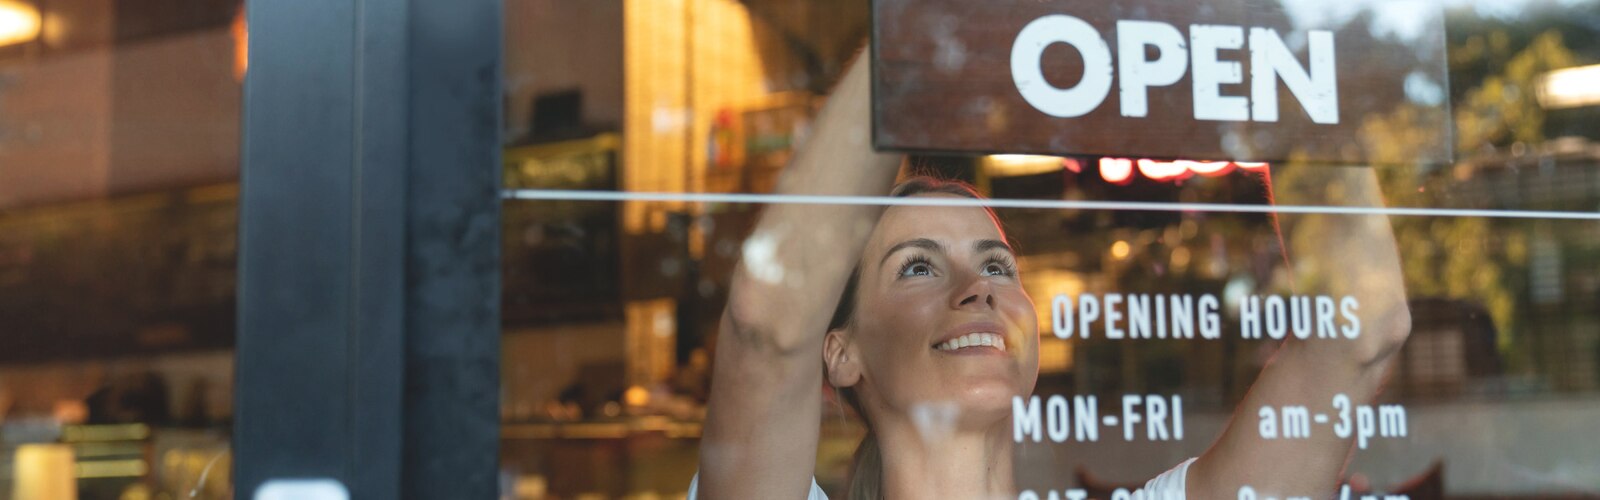 Vrouwen die enigszins omhoogkijken door een raam in een restaurant, met op het raam de gedeeltelijke openingstijden